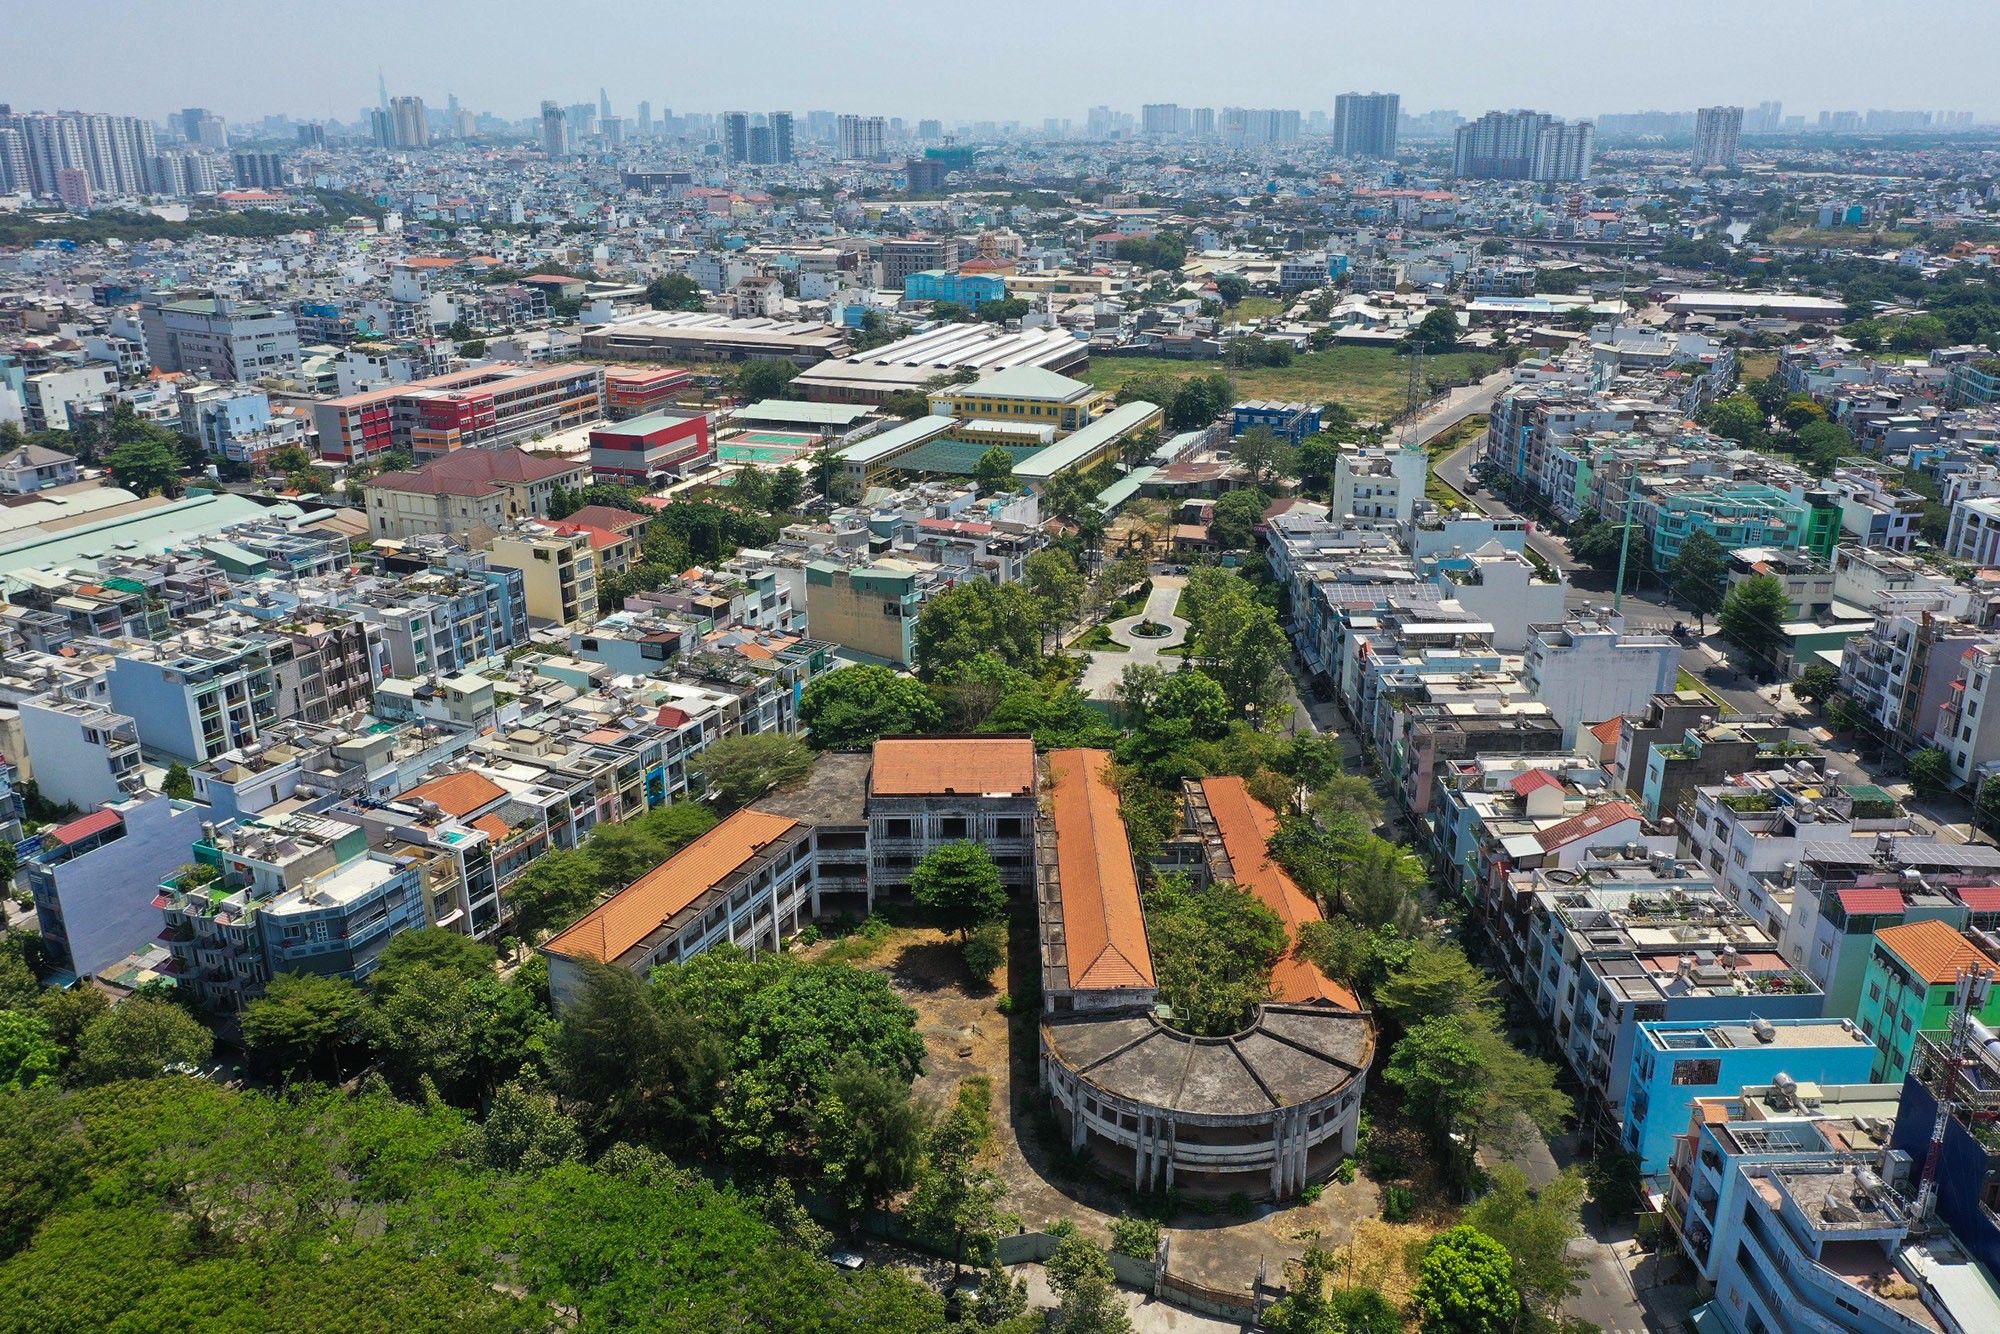 Trường Tiểu học Phú Định (hay còn gọi là trường Trần Văn Kiều) nằm trên đường Vành Đai, phường 10, quận 6 được đưa vào sử dụng năm 2004 với kinh phí xây dựng 20 tỷ đồng. Ngôi trường rộng 6.500 m2, gồm 3 dãy nhà hai lầu với khoảng 40 phòng học và chức năng.